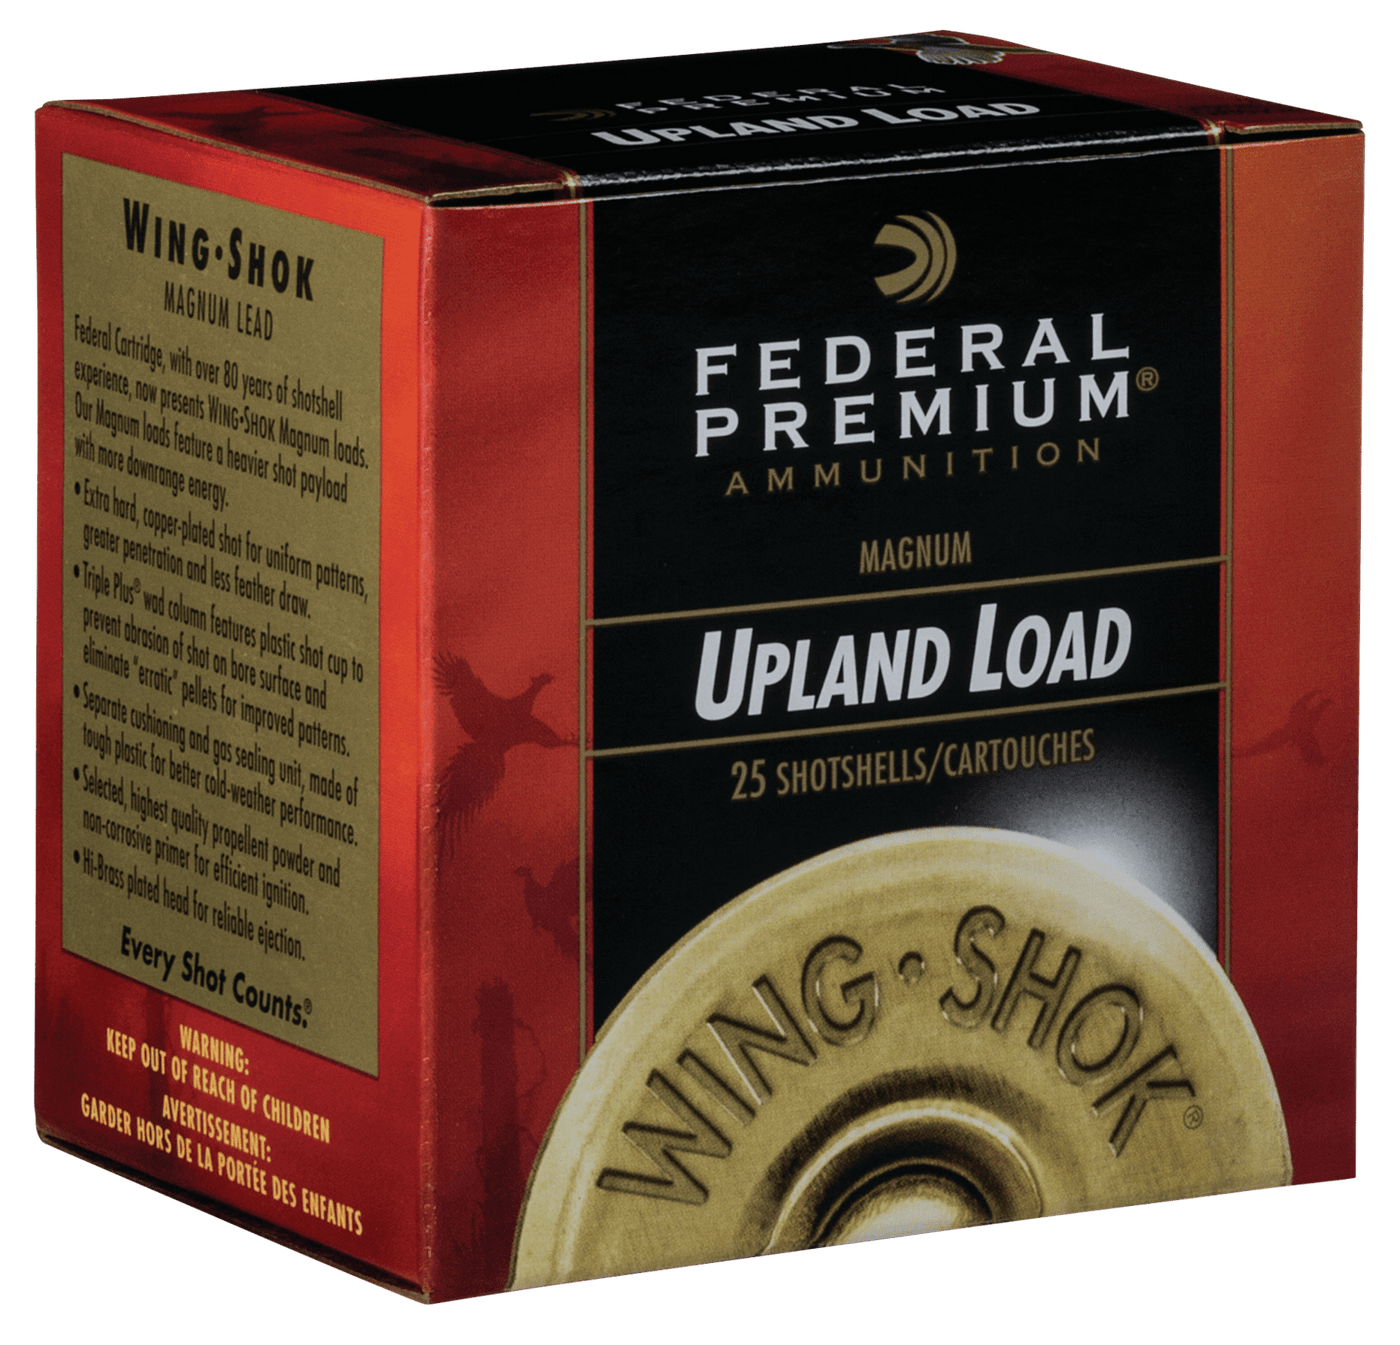 Federal Federal Premium Upland, Fed P1385     Wngshk     12 Hv  13/8         25/10 Ammo